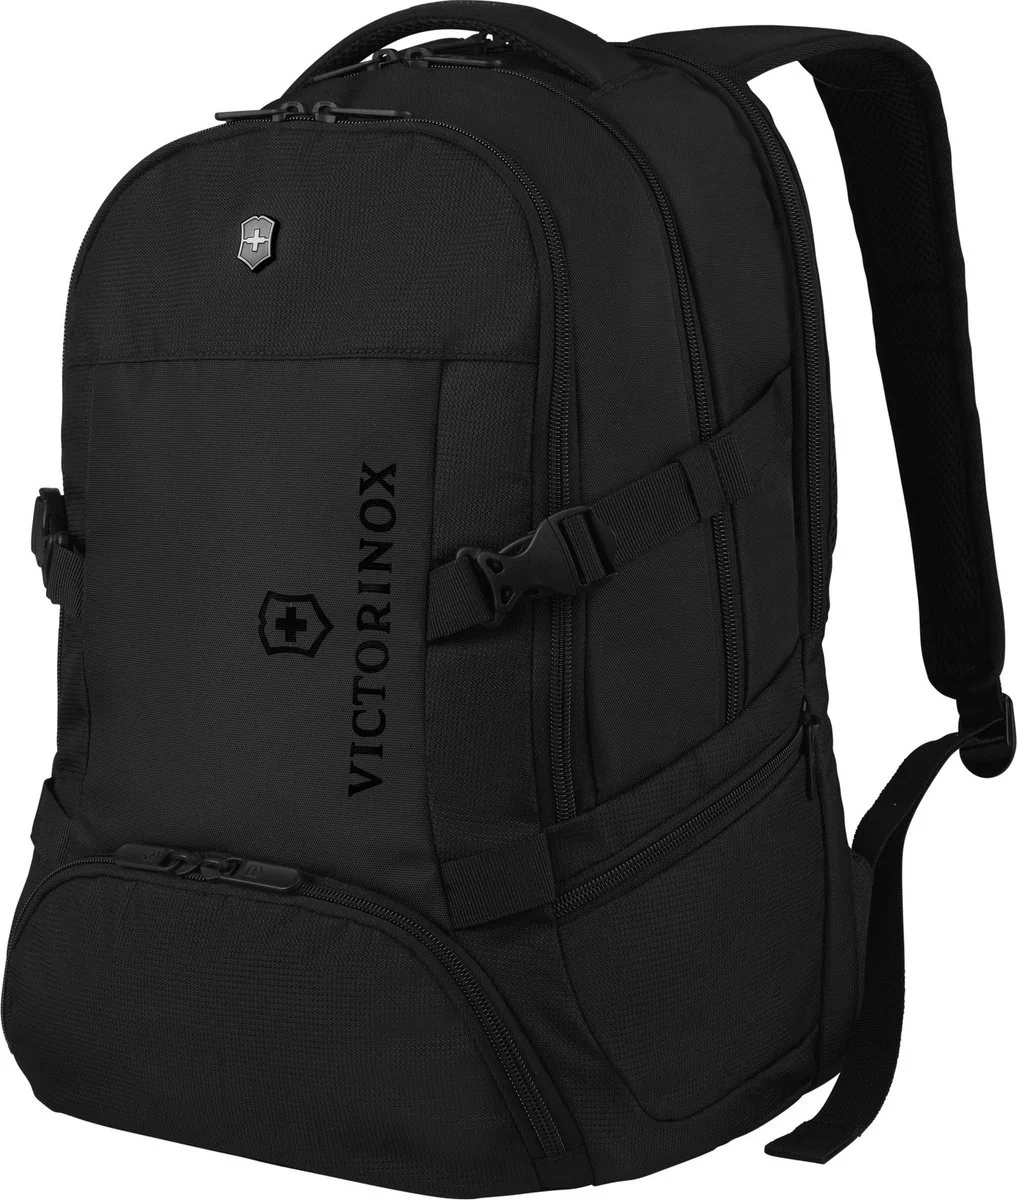 Victorinox Vx Sport EVO Deluxe Plecak 48 cm przegroda na laptopa black-black